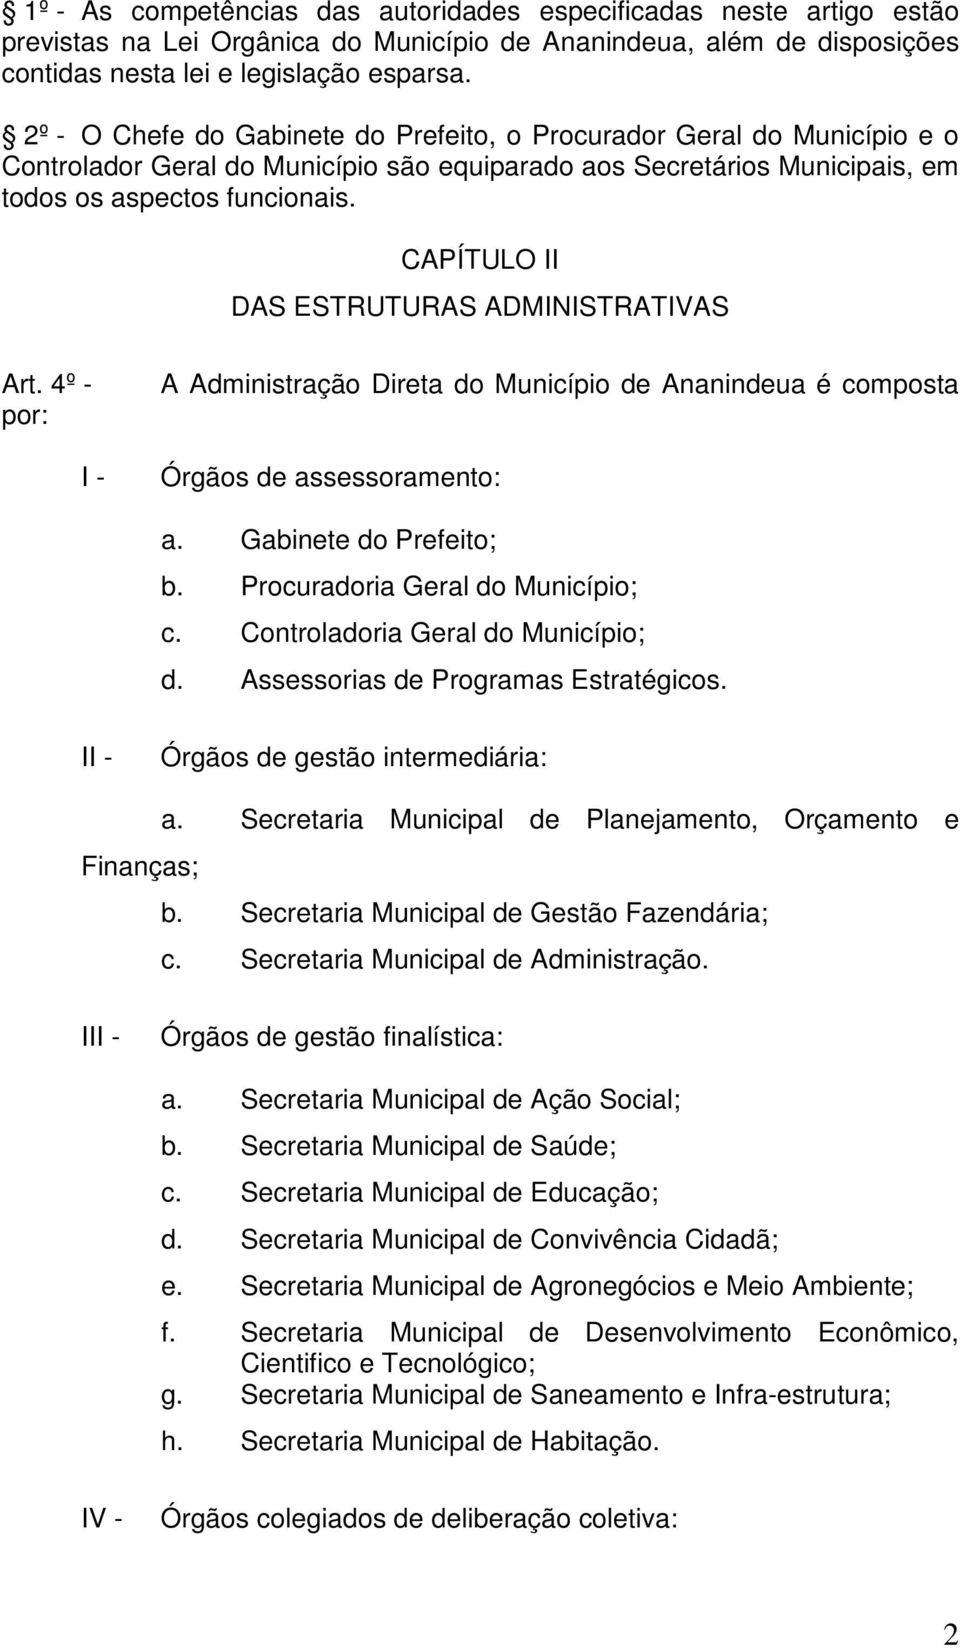 CAPÍTULO II DAS ESTRUTURAS ADMINISTRATIVAS Art. 4º - por: A Administração Direta do Município de Ananindeua é composta Órgãos de assessoramento: a. Gabinete do Prefeito; b.